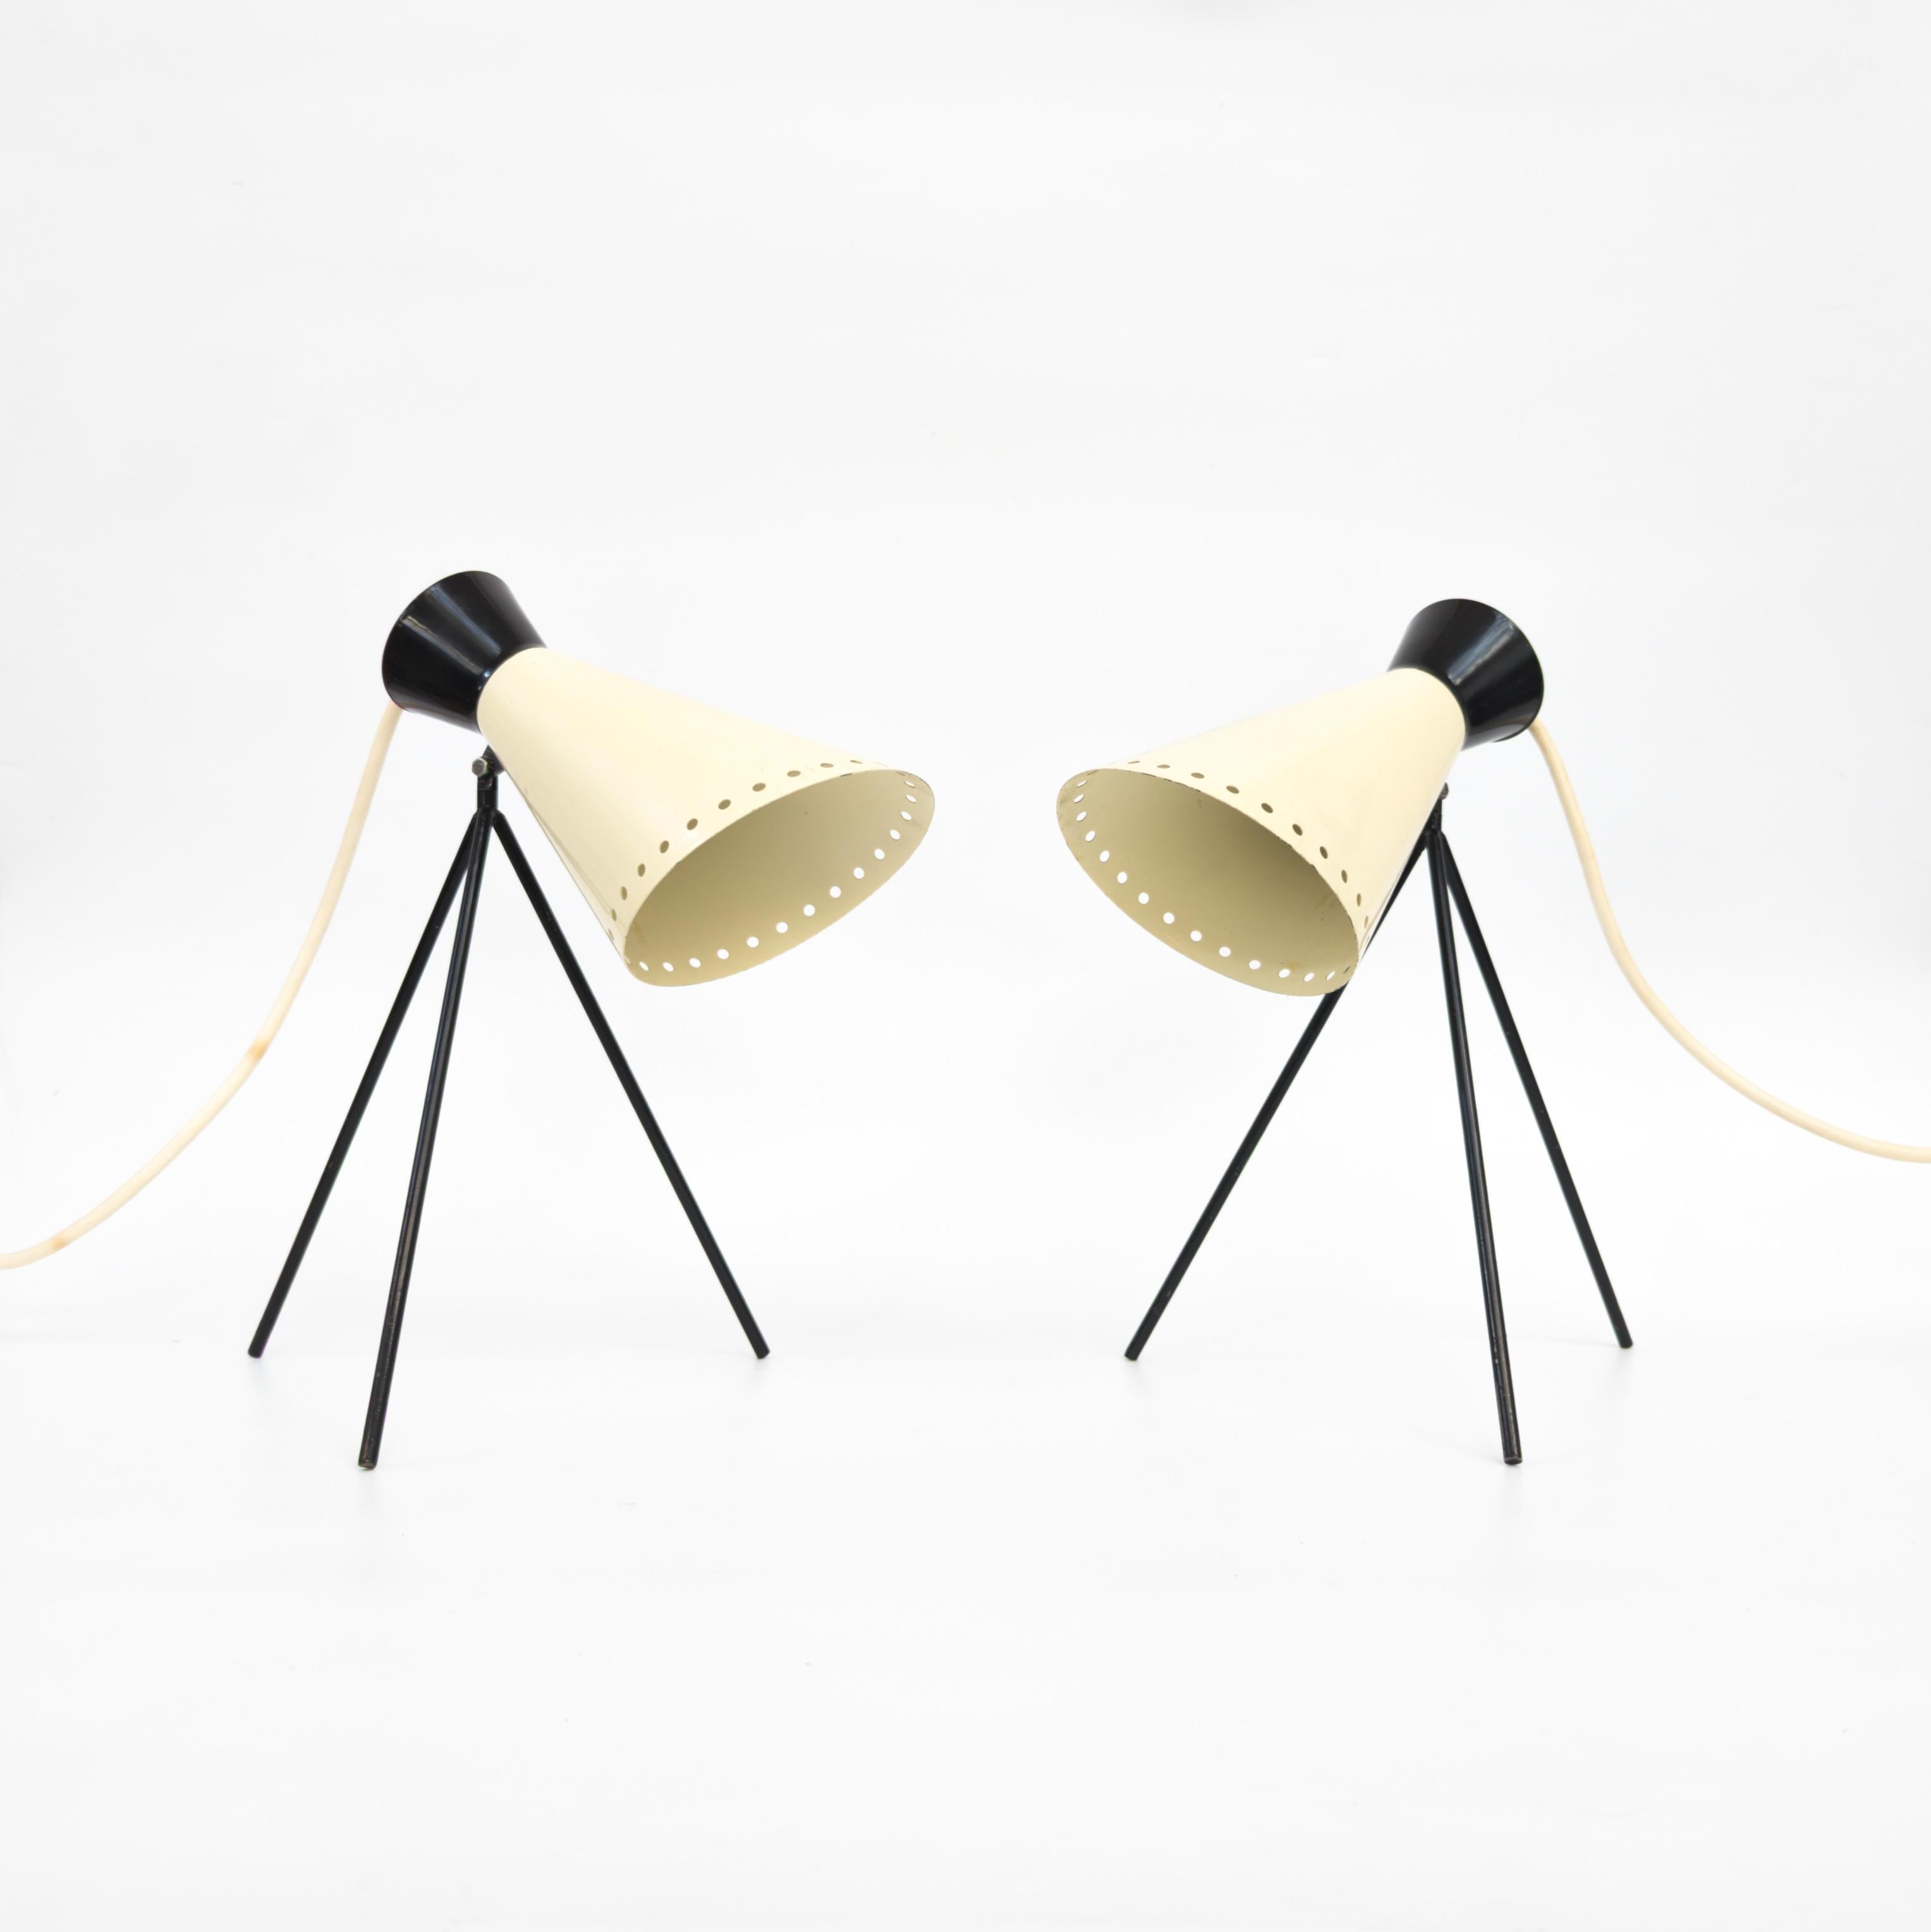 Fantastische dreibeinige Tischlampen aus der Mitte des Jahrhunderts, entworfen von Josef Hurka. Ein schönes Design aus den 1950er Jahren in den klassischen Farben Beige und Schwarz. Diese von Napako in der Tschechischen Republik gefertigten Lampen